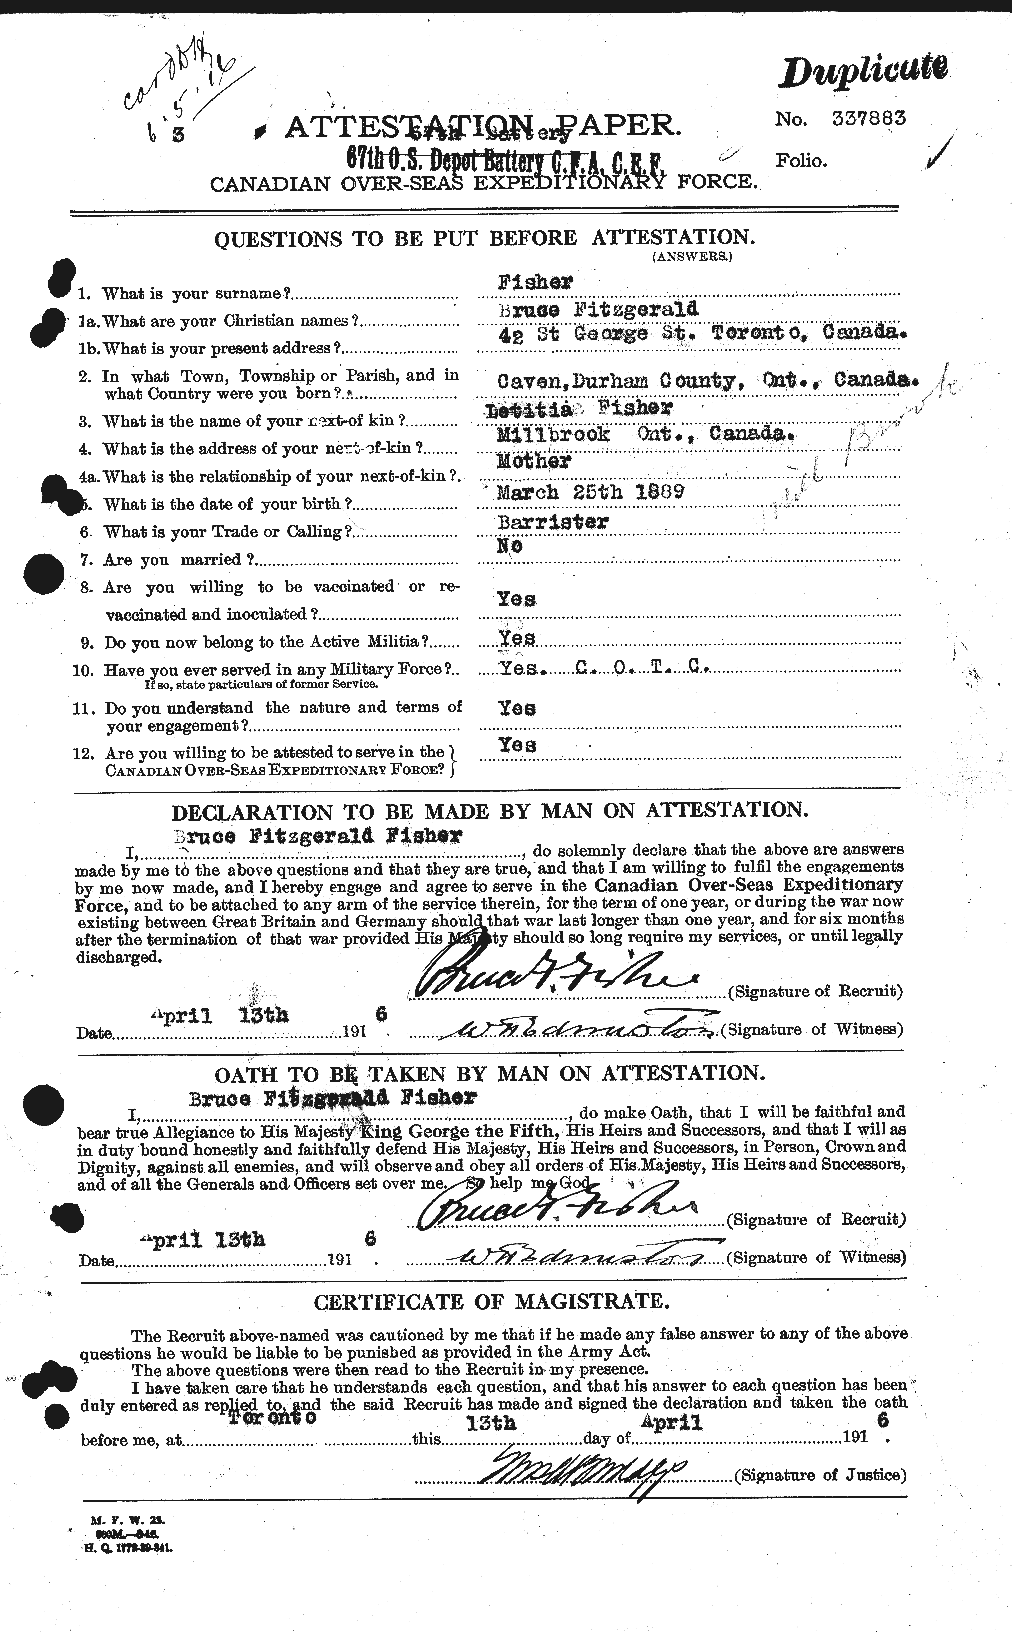 Dossiers du Personnel de la Première Guerre mondiale - CEC 325295a